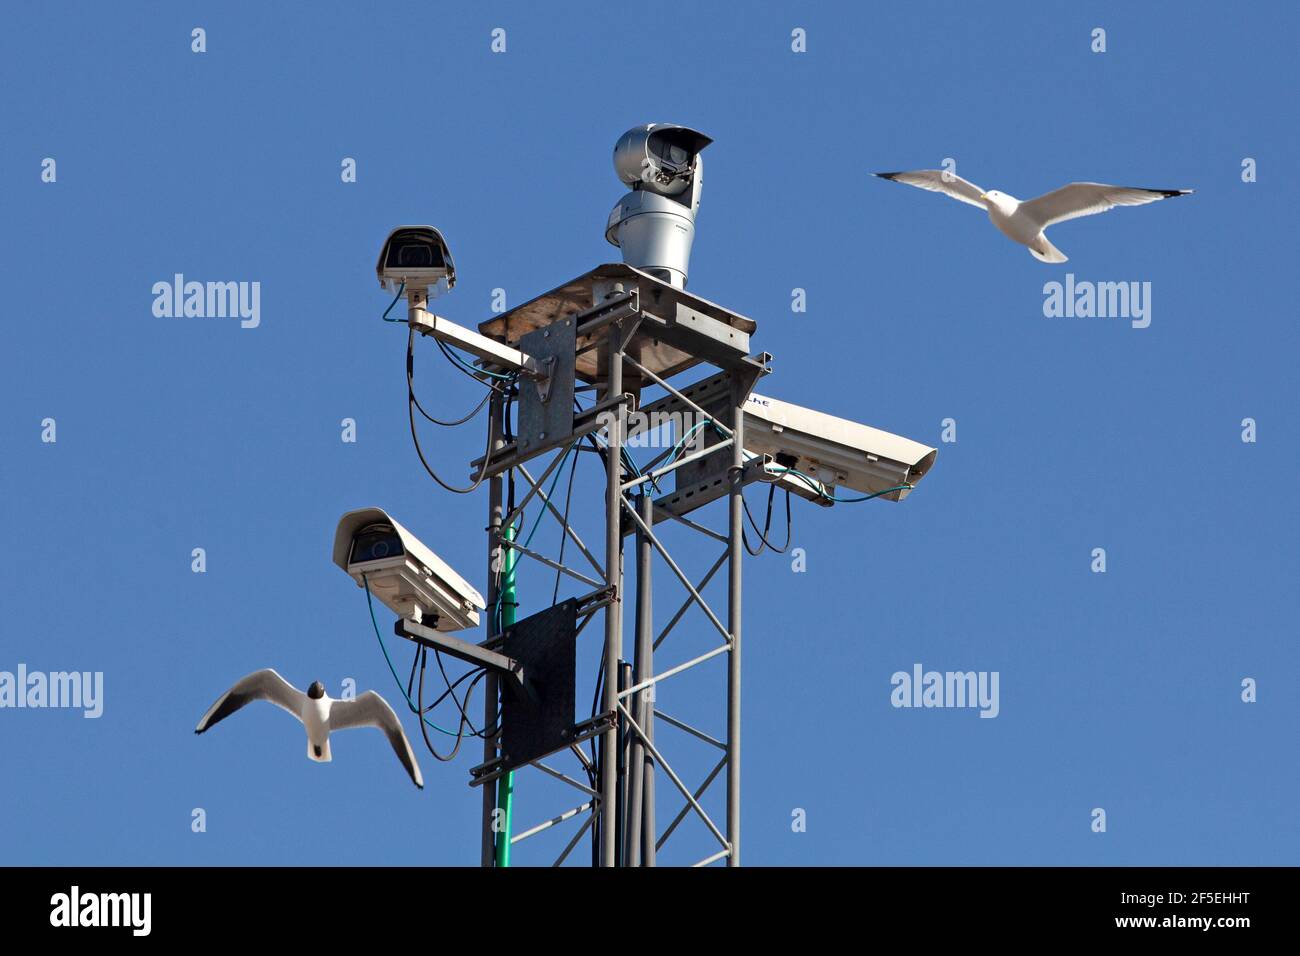 Stoccolma, Svezia - 25 marzo 2021: Sistema di sorveglianza con quattro telecamere montate in alto con gabbiani che volano intorno. Illustrando il topografo Foto Stock